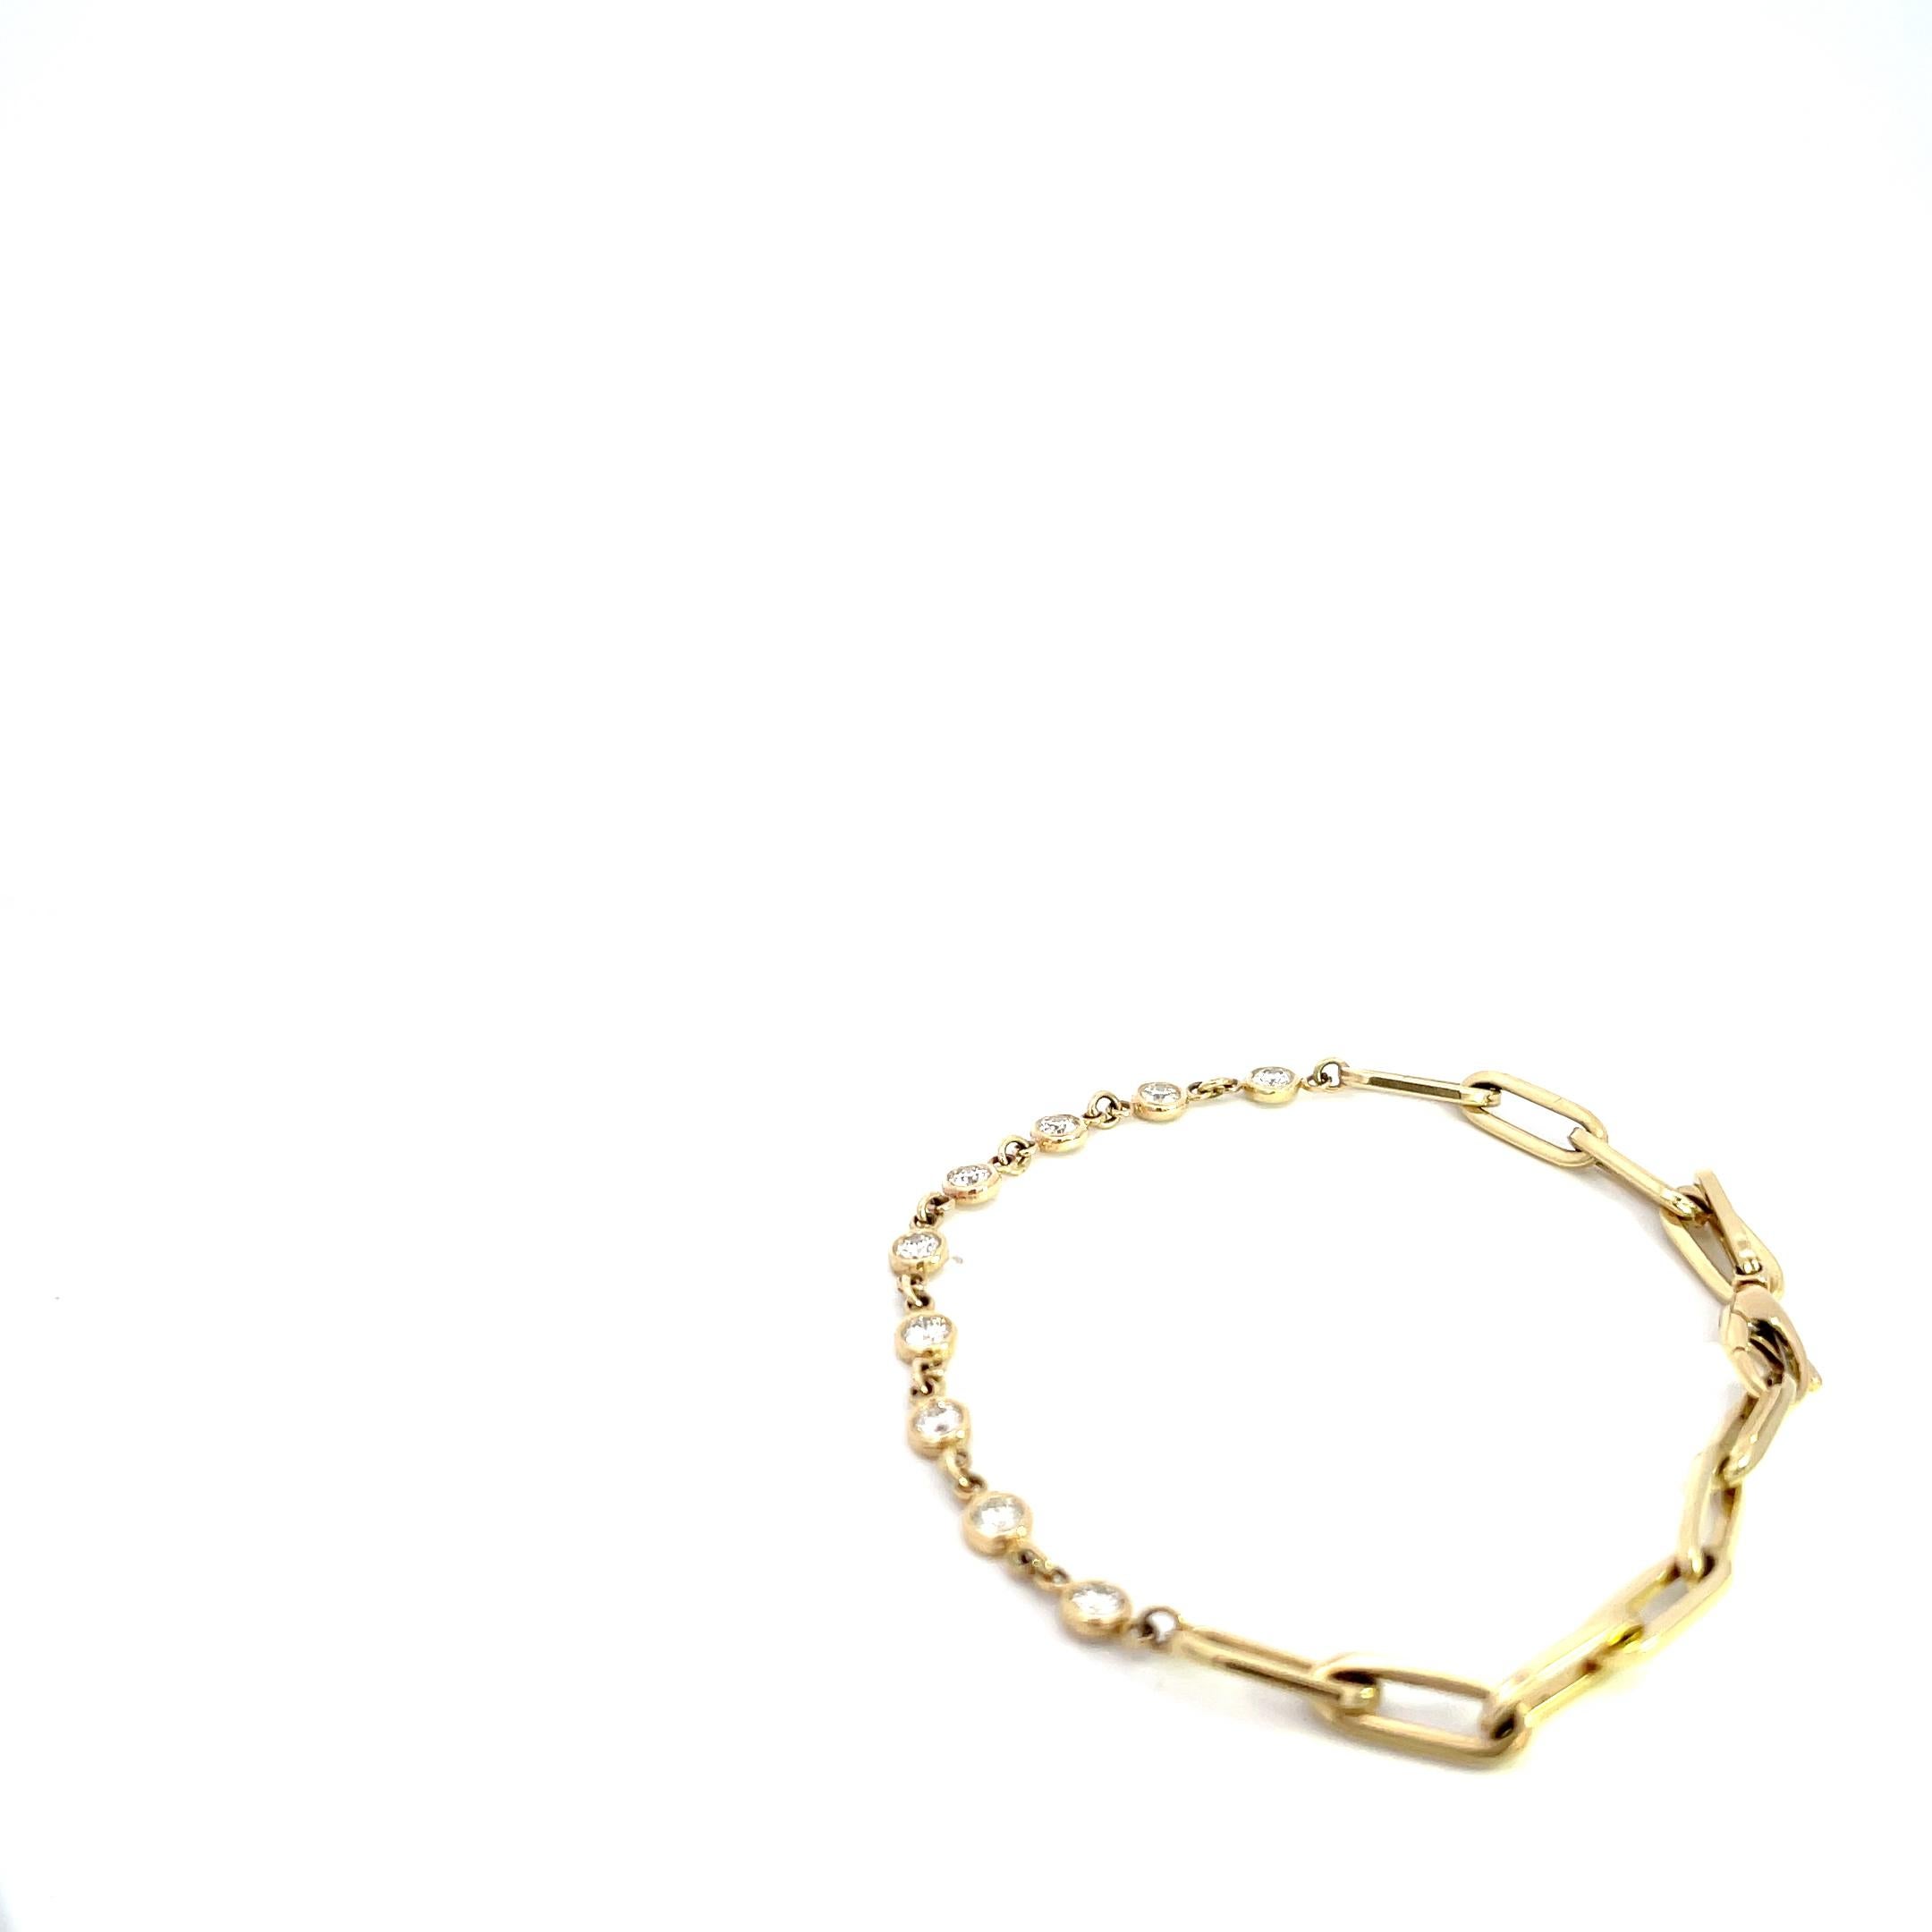 Voici notre exquis bracelet trombone en or jaune 14K avec chaton en diamant de 0,86ctw - l'incarnation de l'élégance et de la sophistication. Fabriqué avec la plus grande attention aux détails, ce bracelet est un véritable chef-d'œuvre qui élèvera